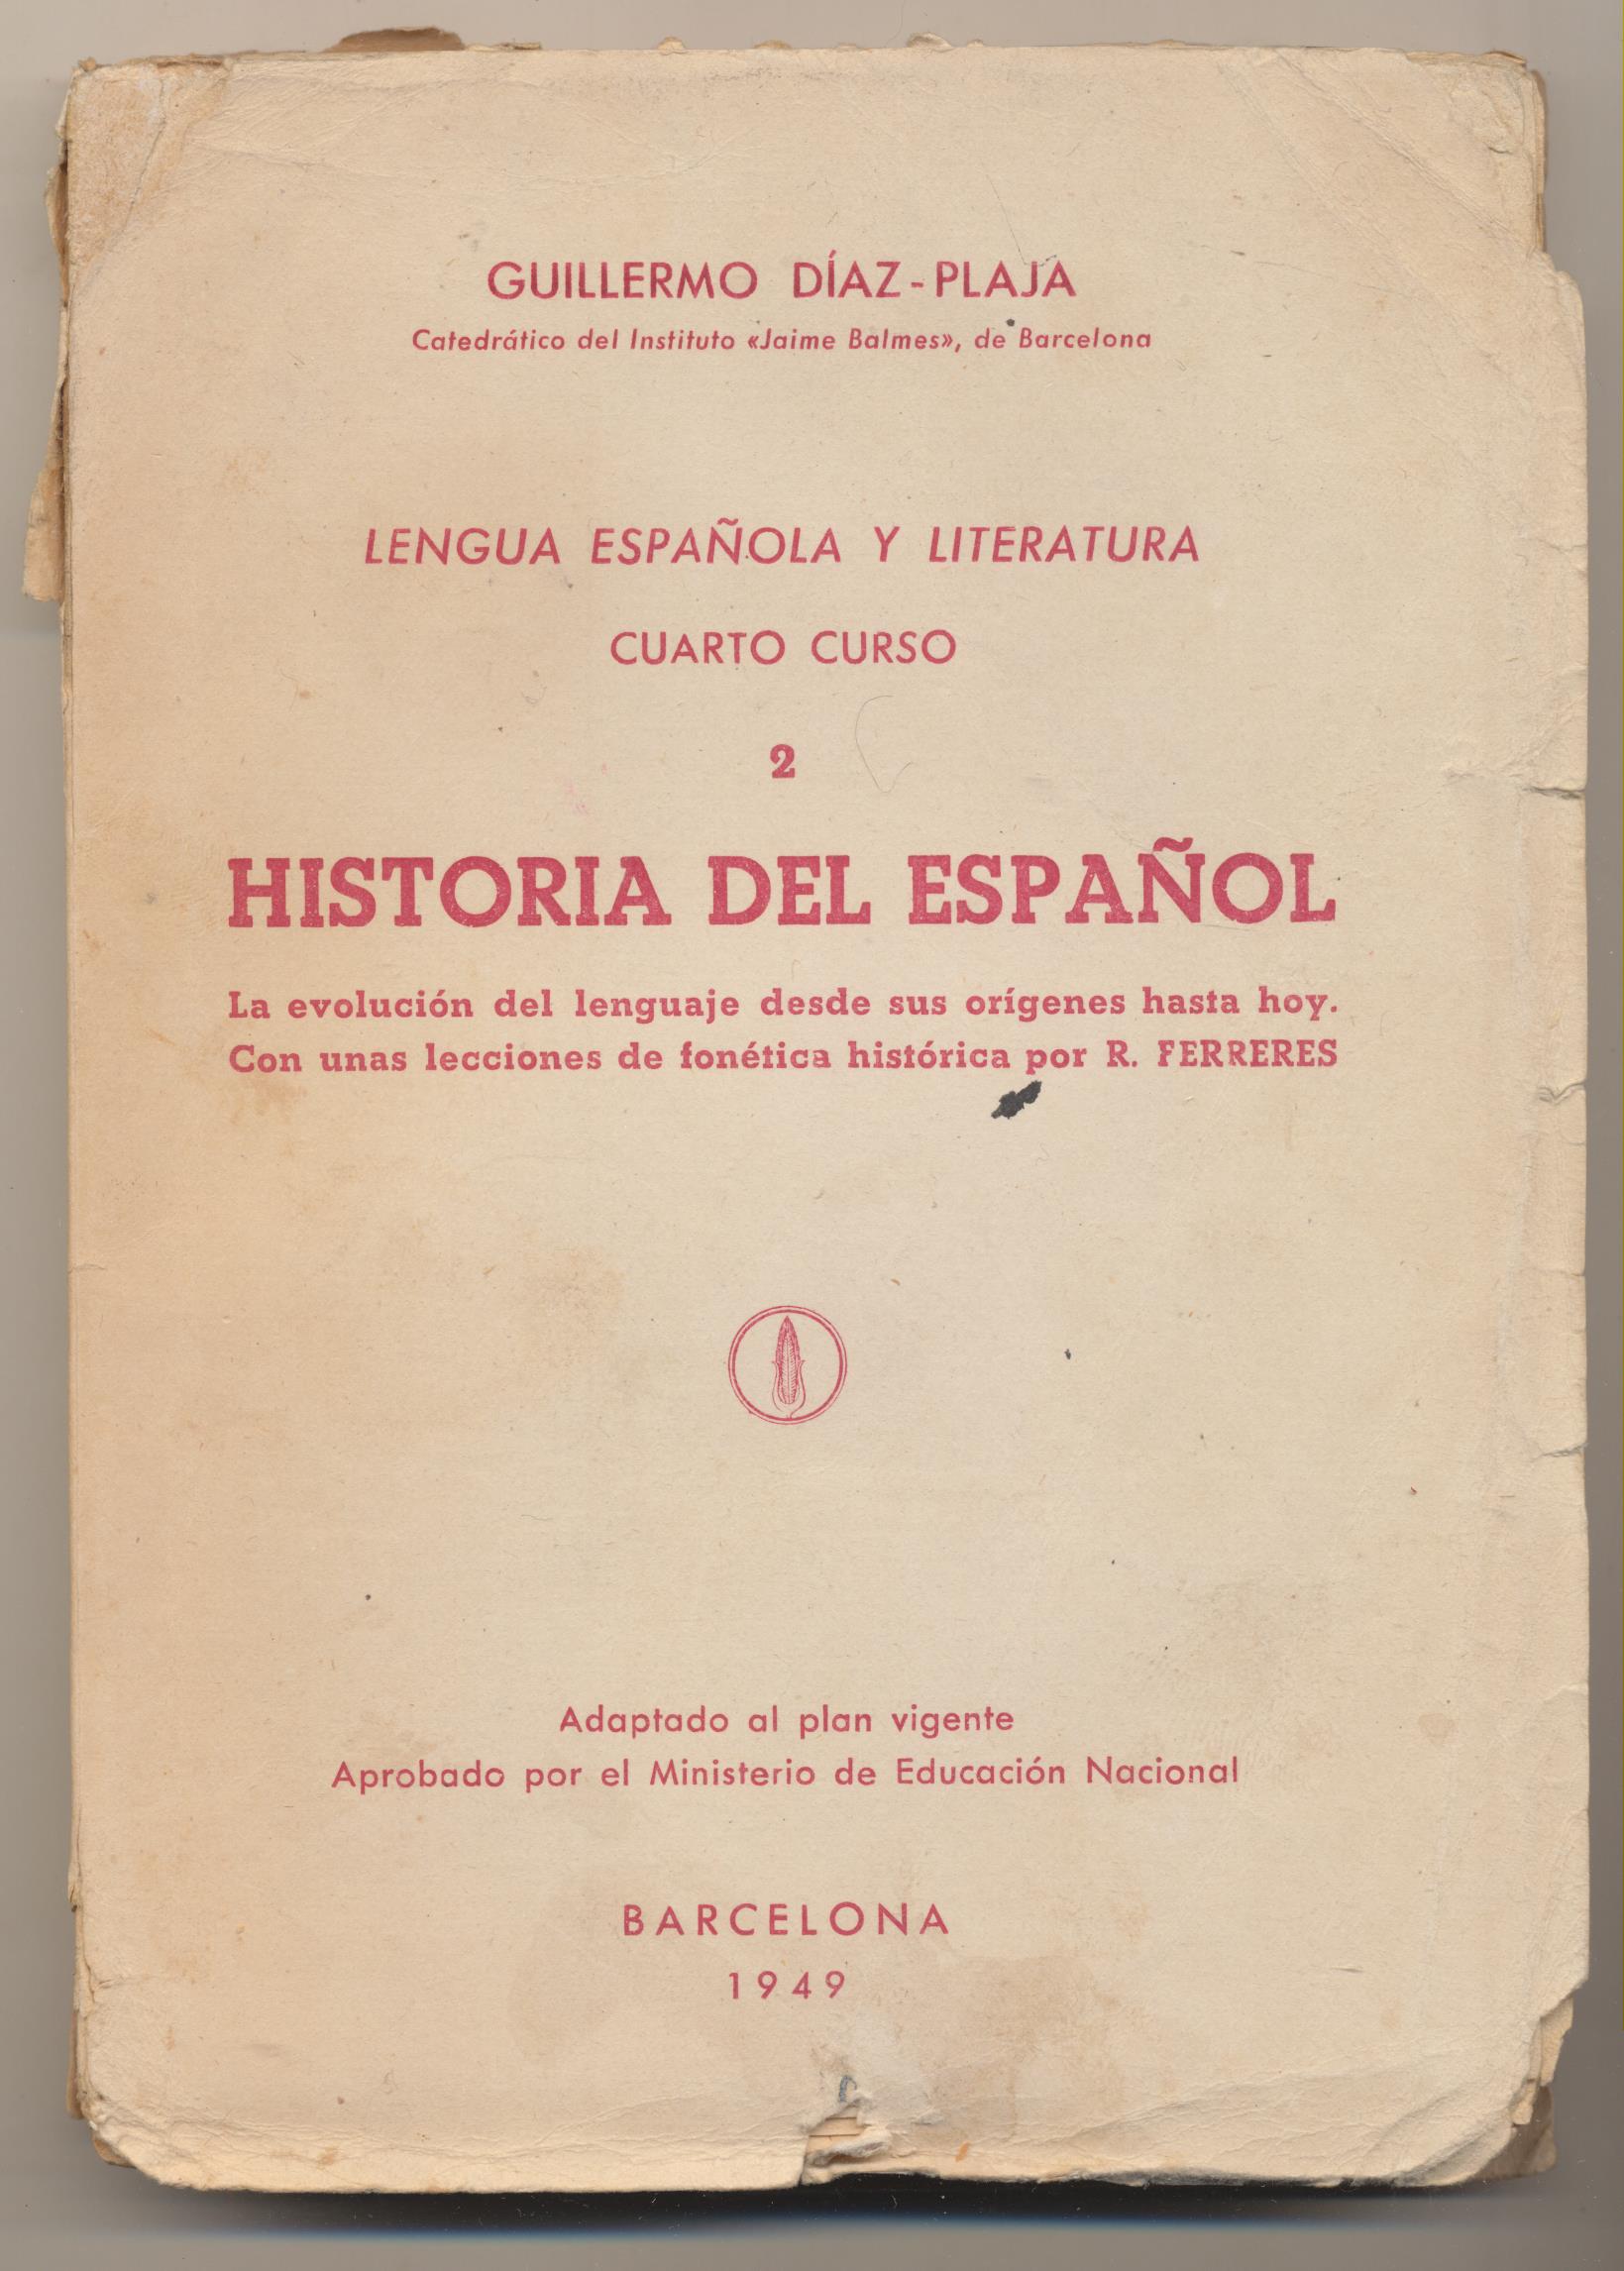 Guillermo Díaz-Plaja. Lengua Española y Literatura Cuarto Curso. Historia del Español 2. Barcelona 1949